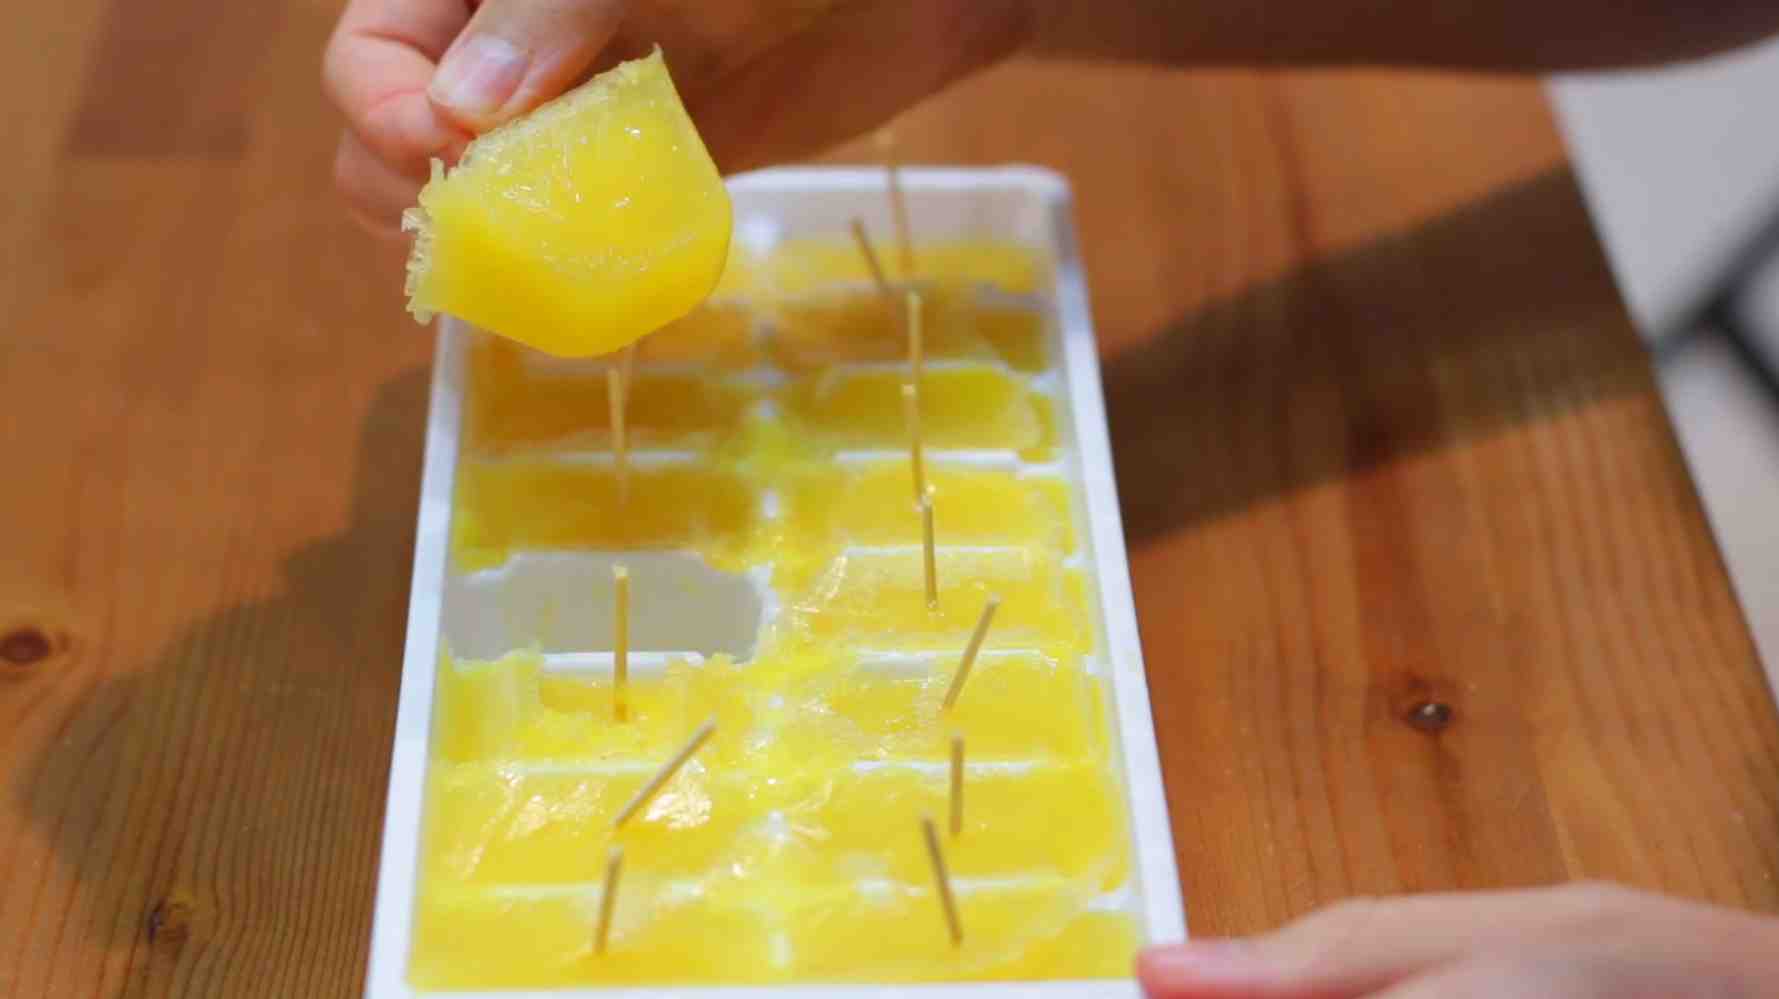 Deshalb sollten Sie anfangen, gefrorene Zitronen zu konsumieren!